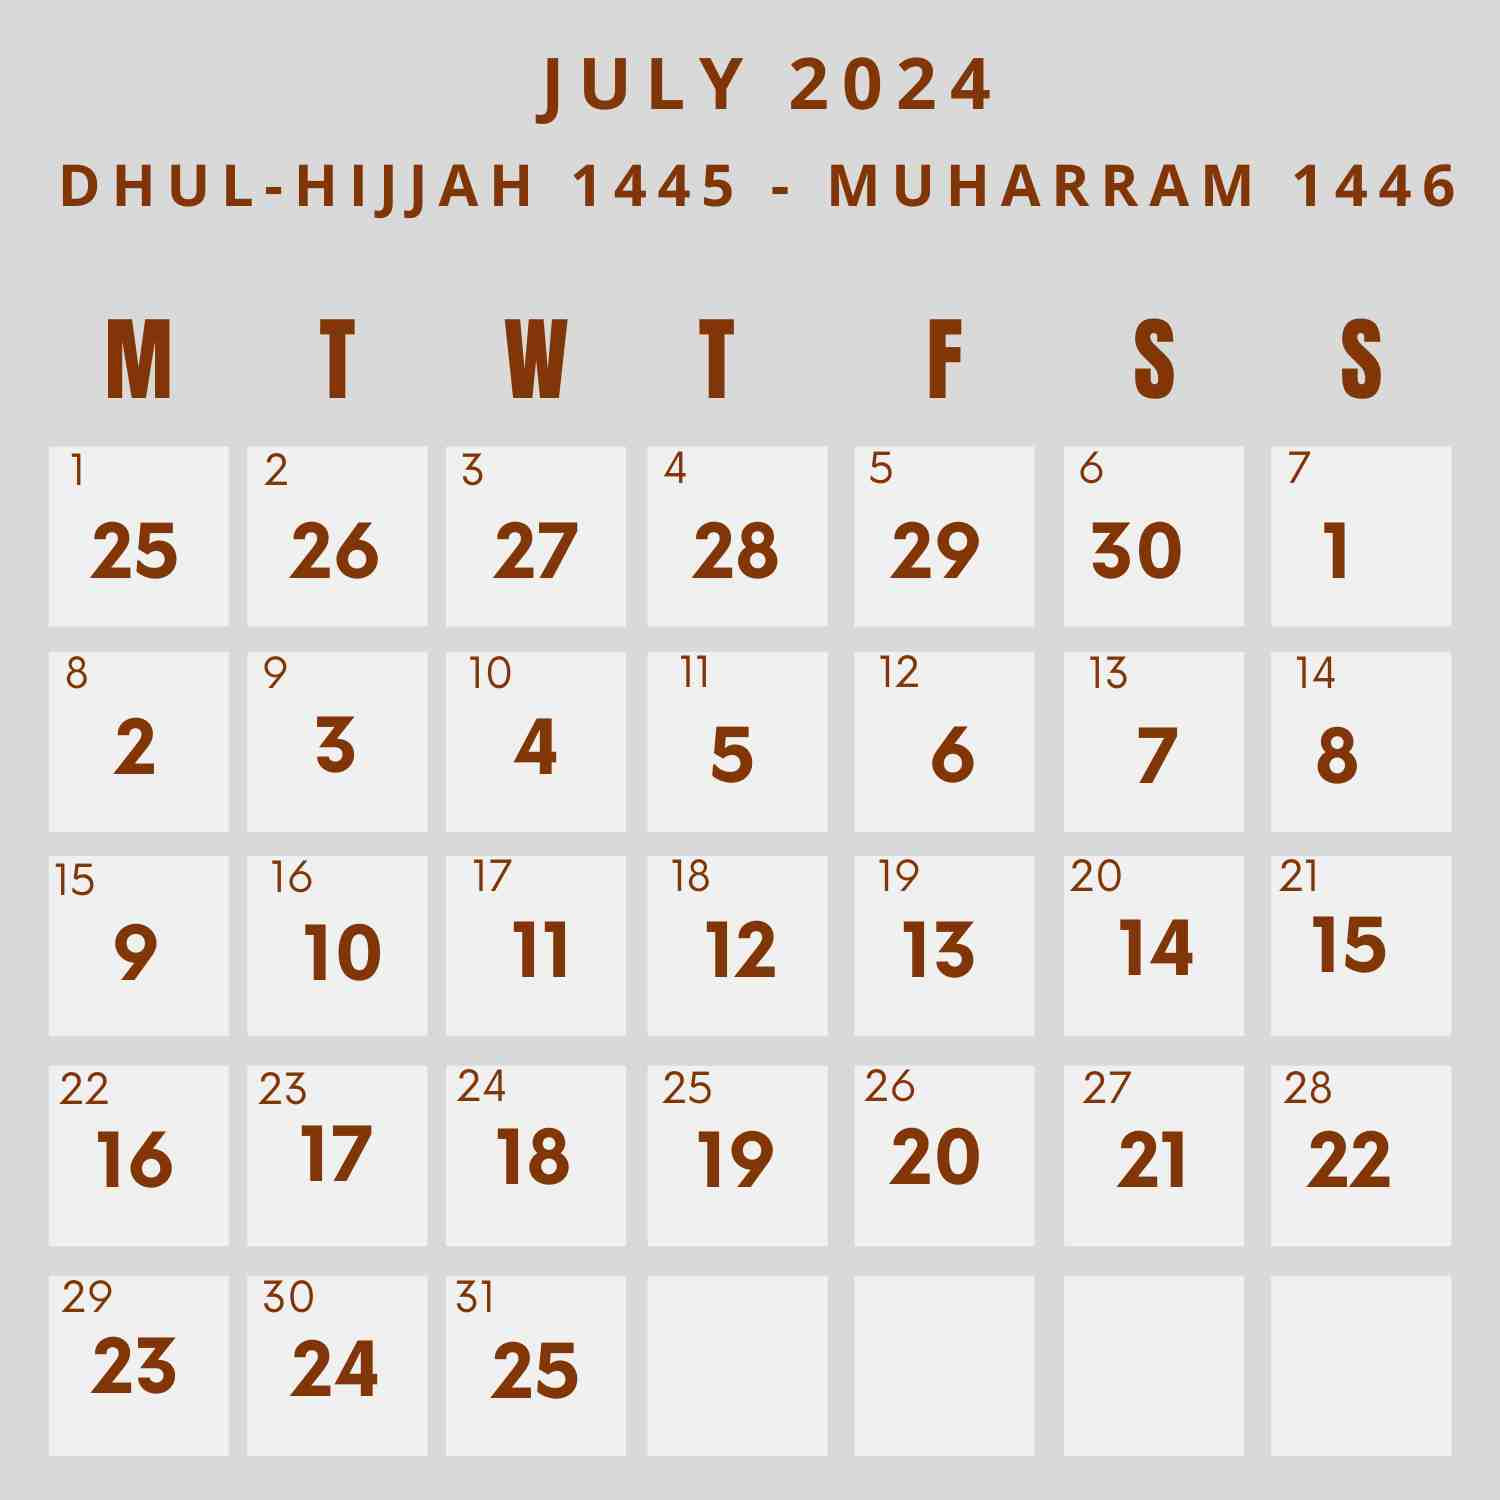 Islamic Calendar 2024 - Khwajadarbar within 6 July 2024 In Islamic Calendar